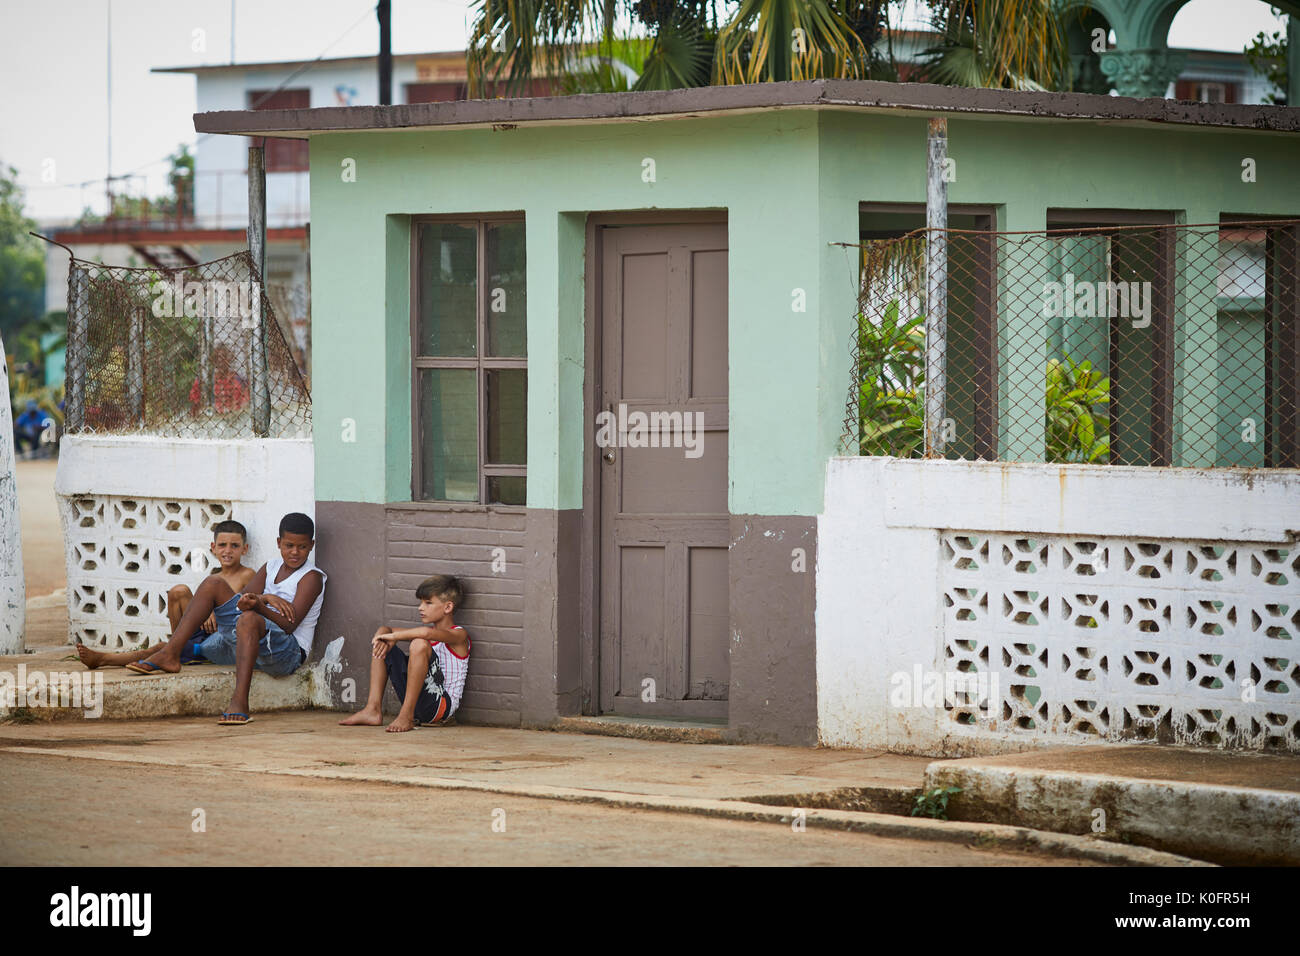 Cubano, Cuba, Cardenas, bambini appoggiata dal gioco nel villaggio Foto Stock